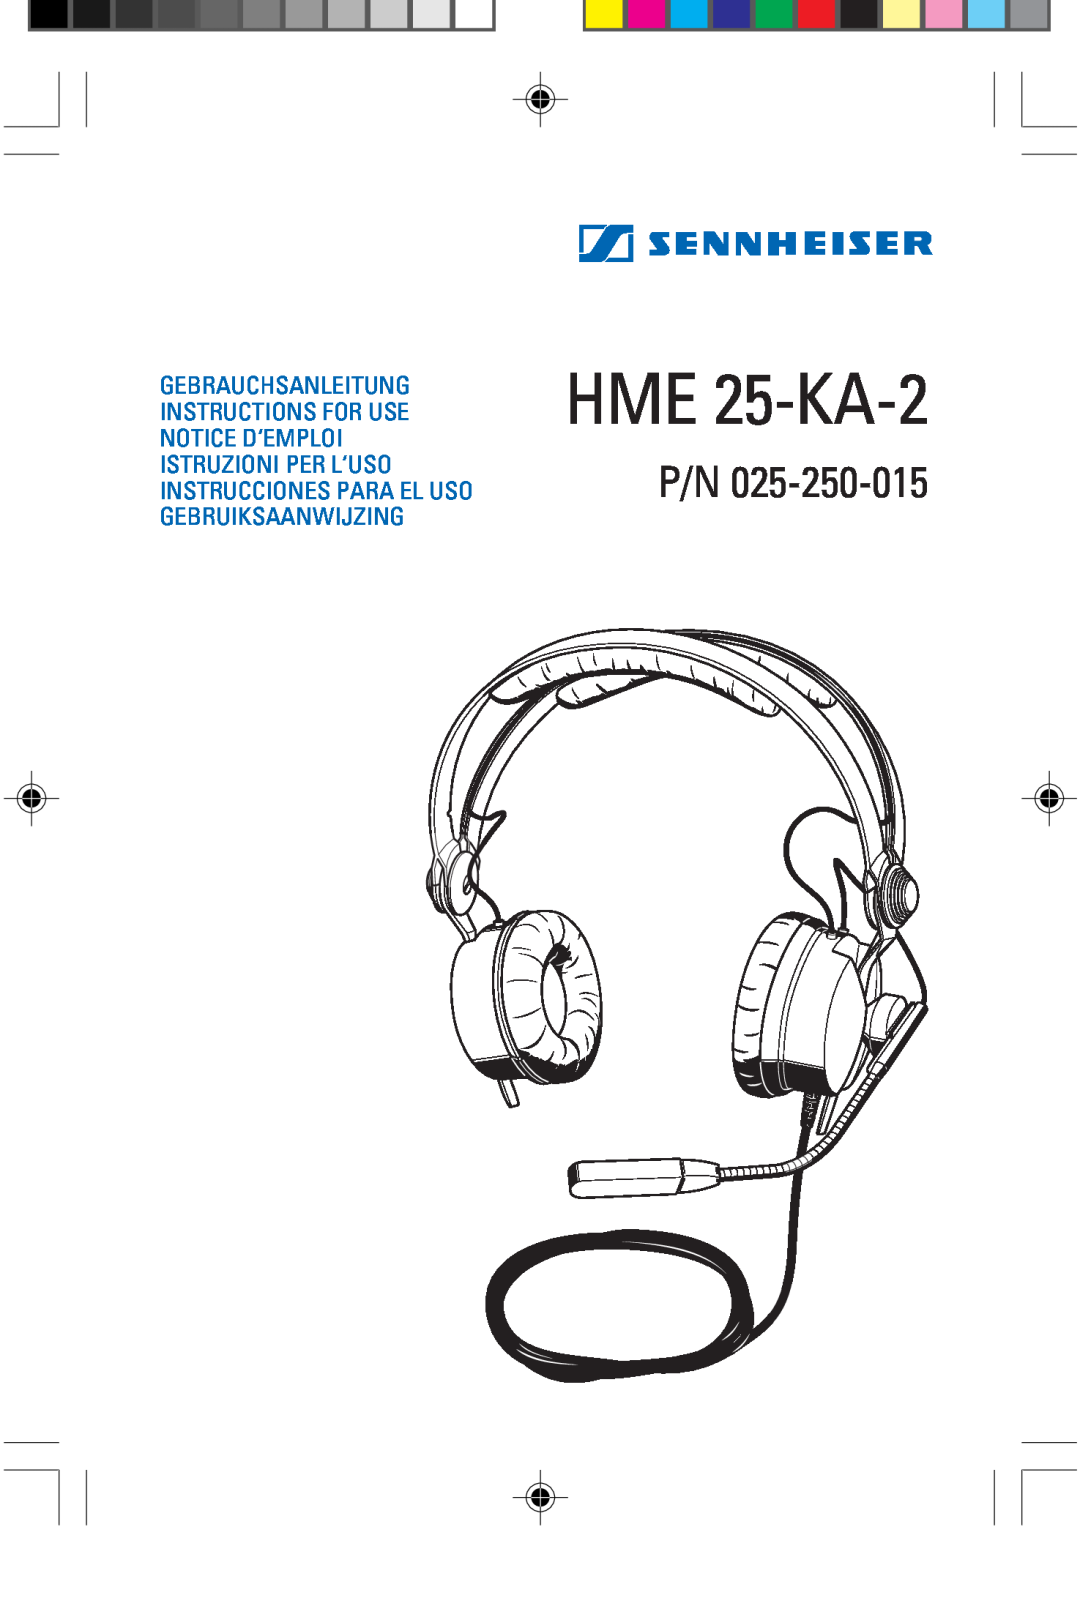 Sennheiser P/N 025-250-015 manual HME 25-KA-2 